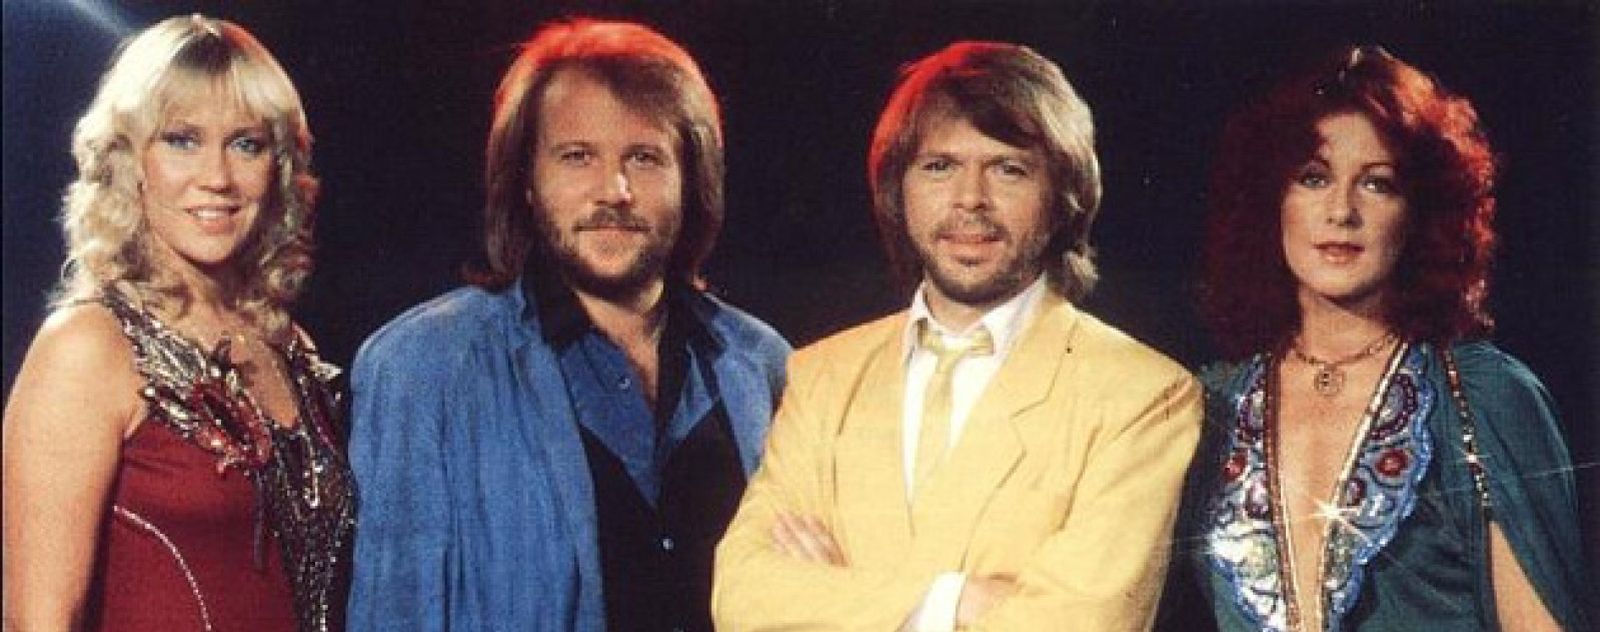 Foto: Ni The Smiths, ni Pink Floyd: los británicos quieren que vuelva ABBA